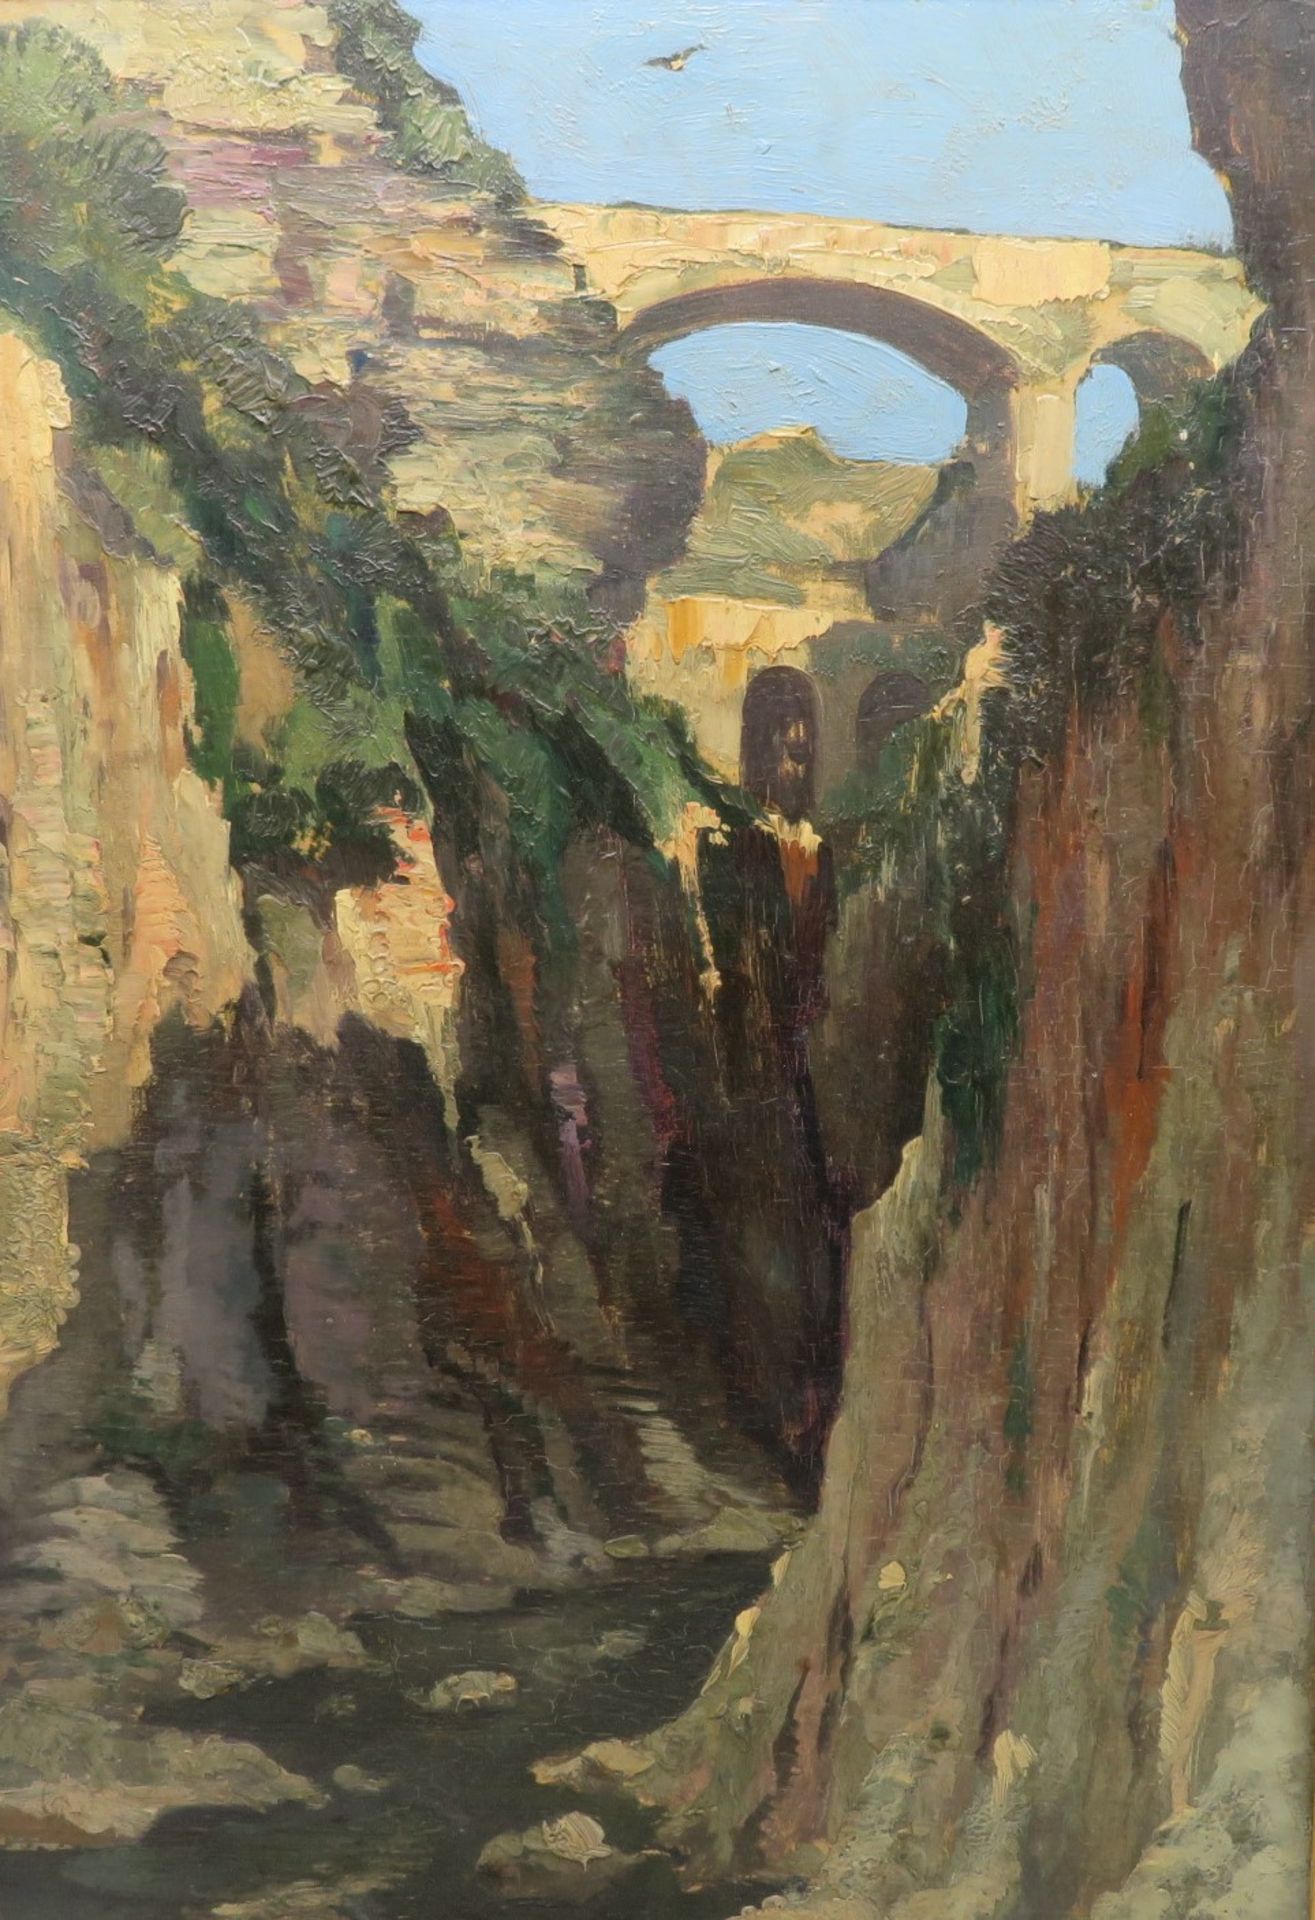 Snyders, um 1900, "Brücke über eine Schlucht", verso sign., Öl/Malerpappe, 48,5 x 36 cm, R. [60 x 4